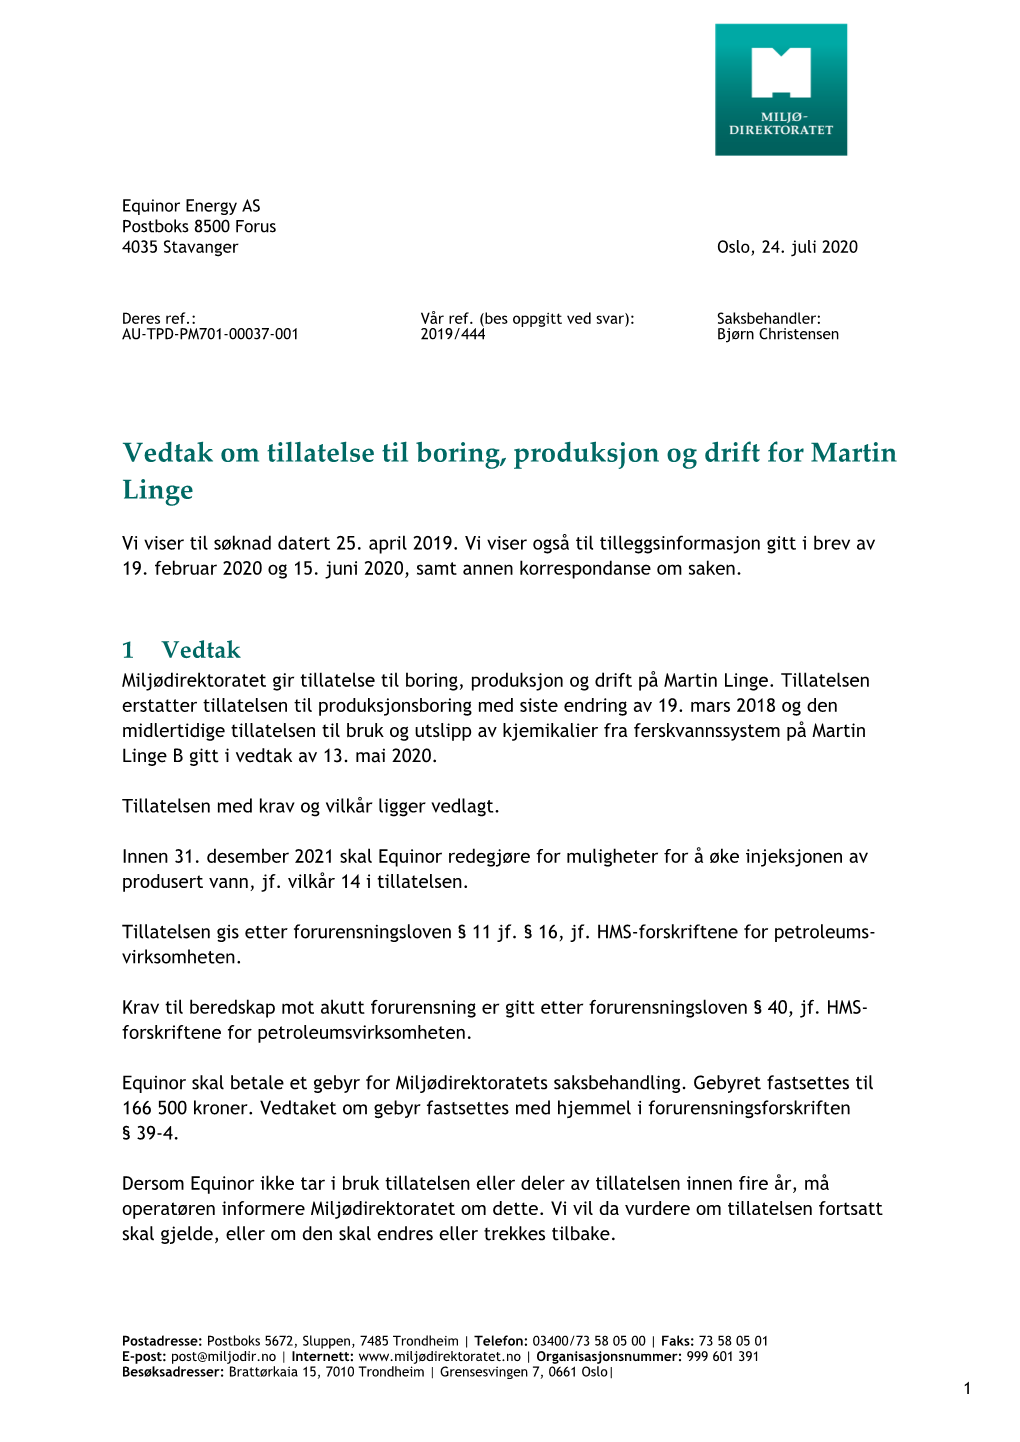 Vedtak Om Tillatelse Til Boring, Produksjon Og Drift for Martin Linge